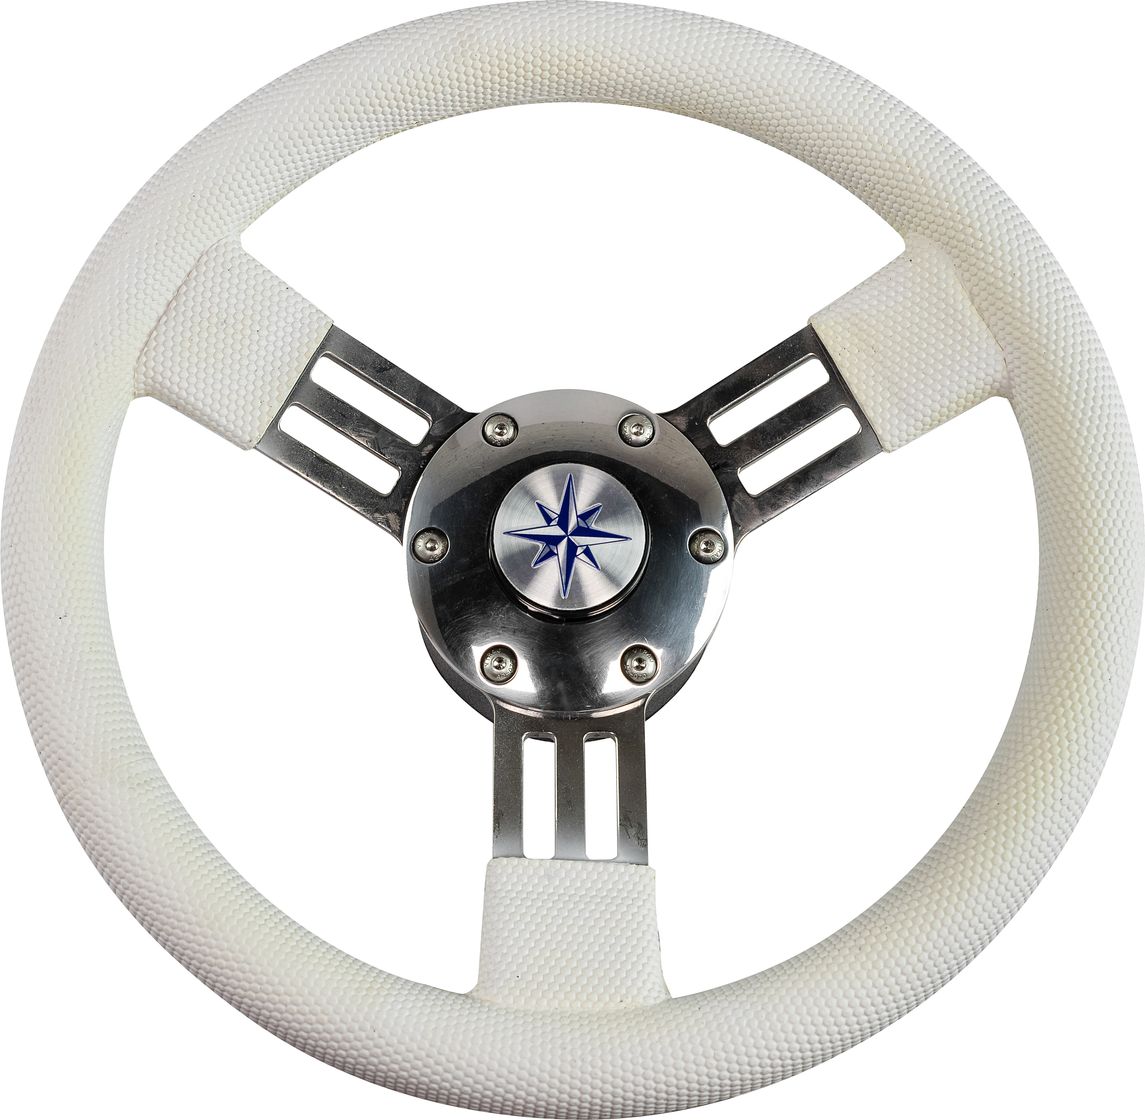 Рулевое колесо PEGASO обод белый, спицы серебряные д. 300 мм VN13327-08 рулевое колесо leader tanegum обод серебряные спицы д 360 мм vn7360 01